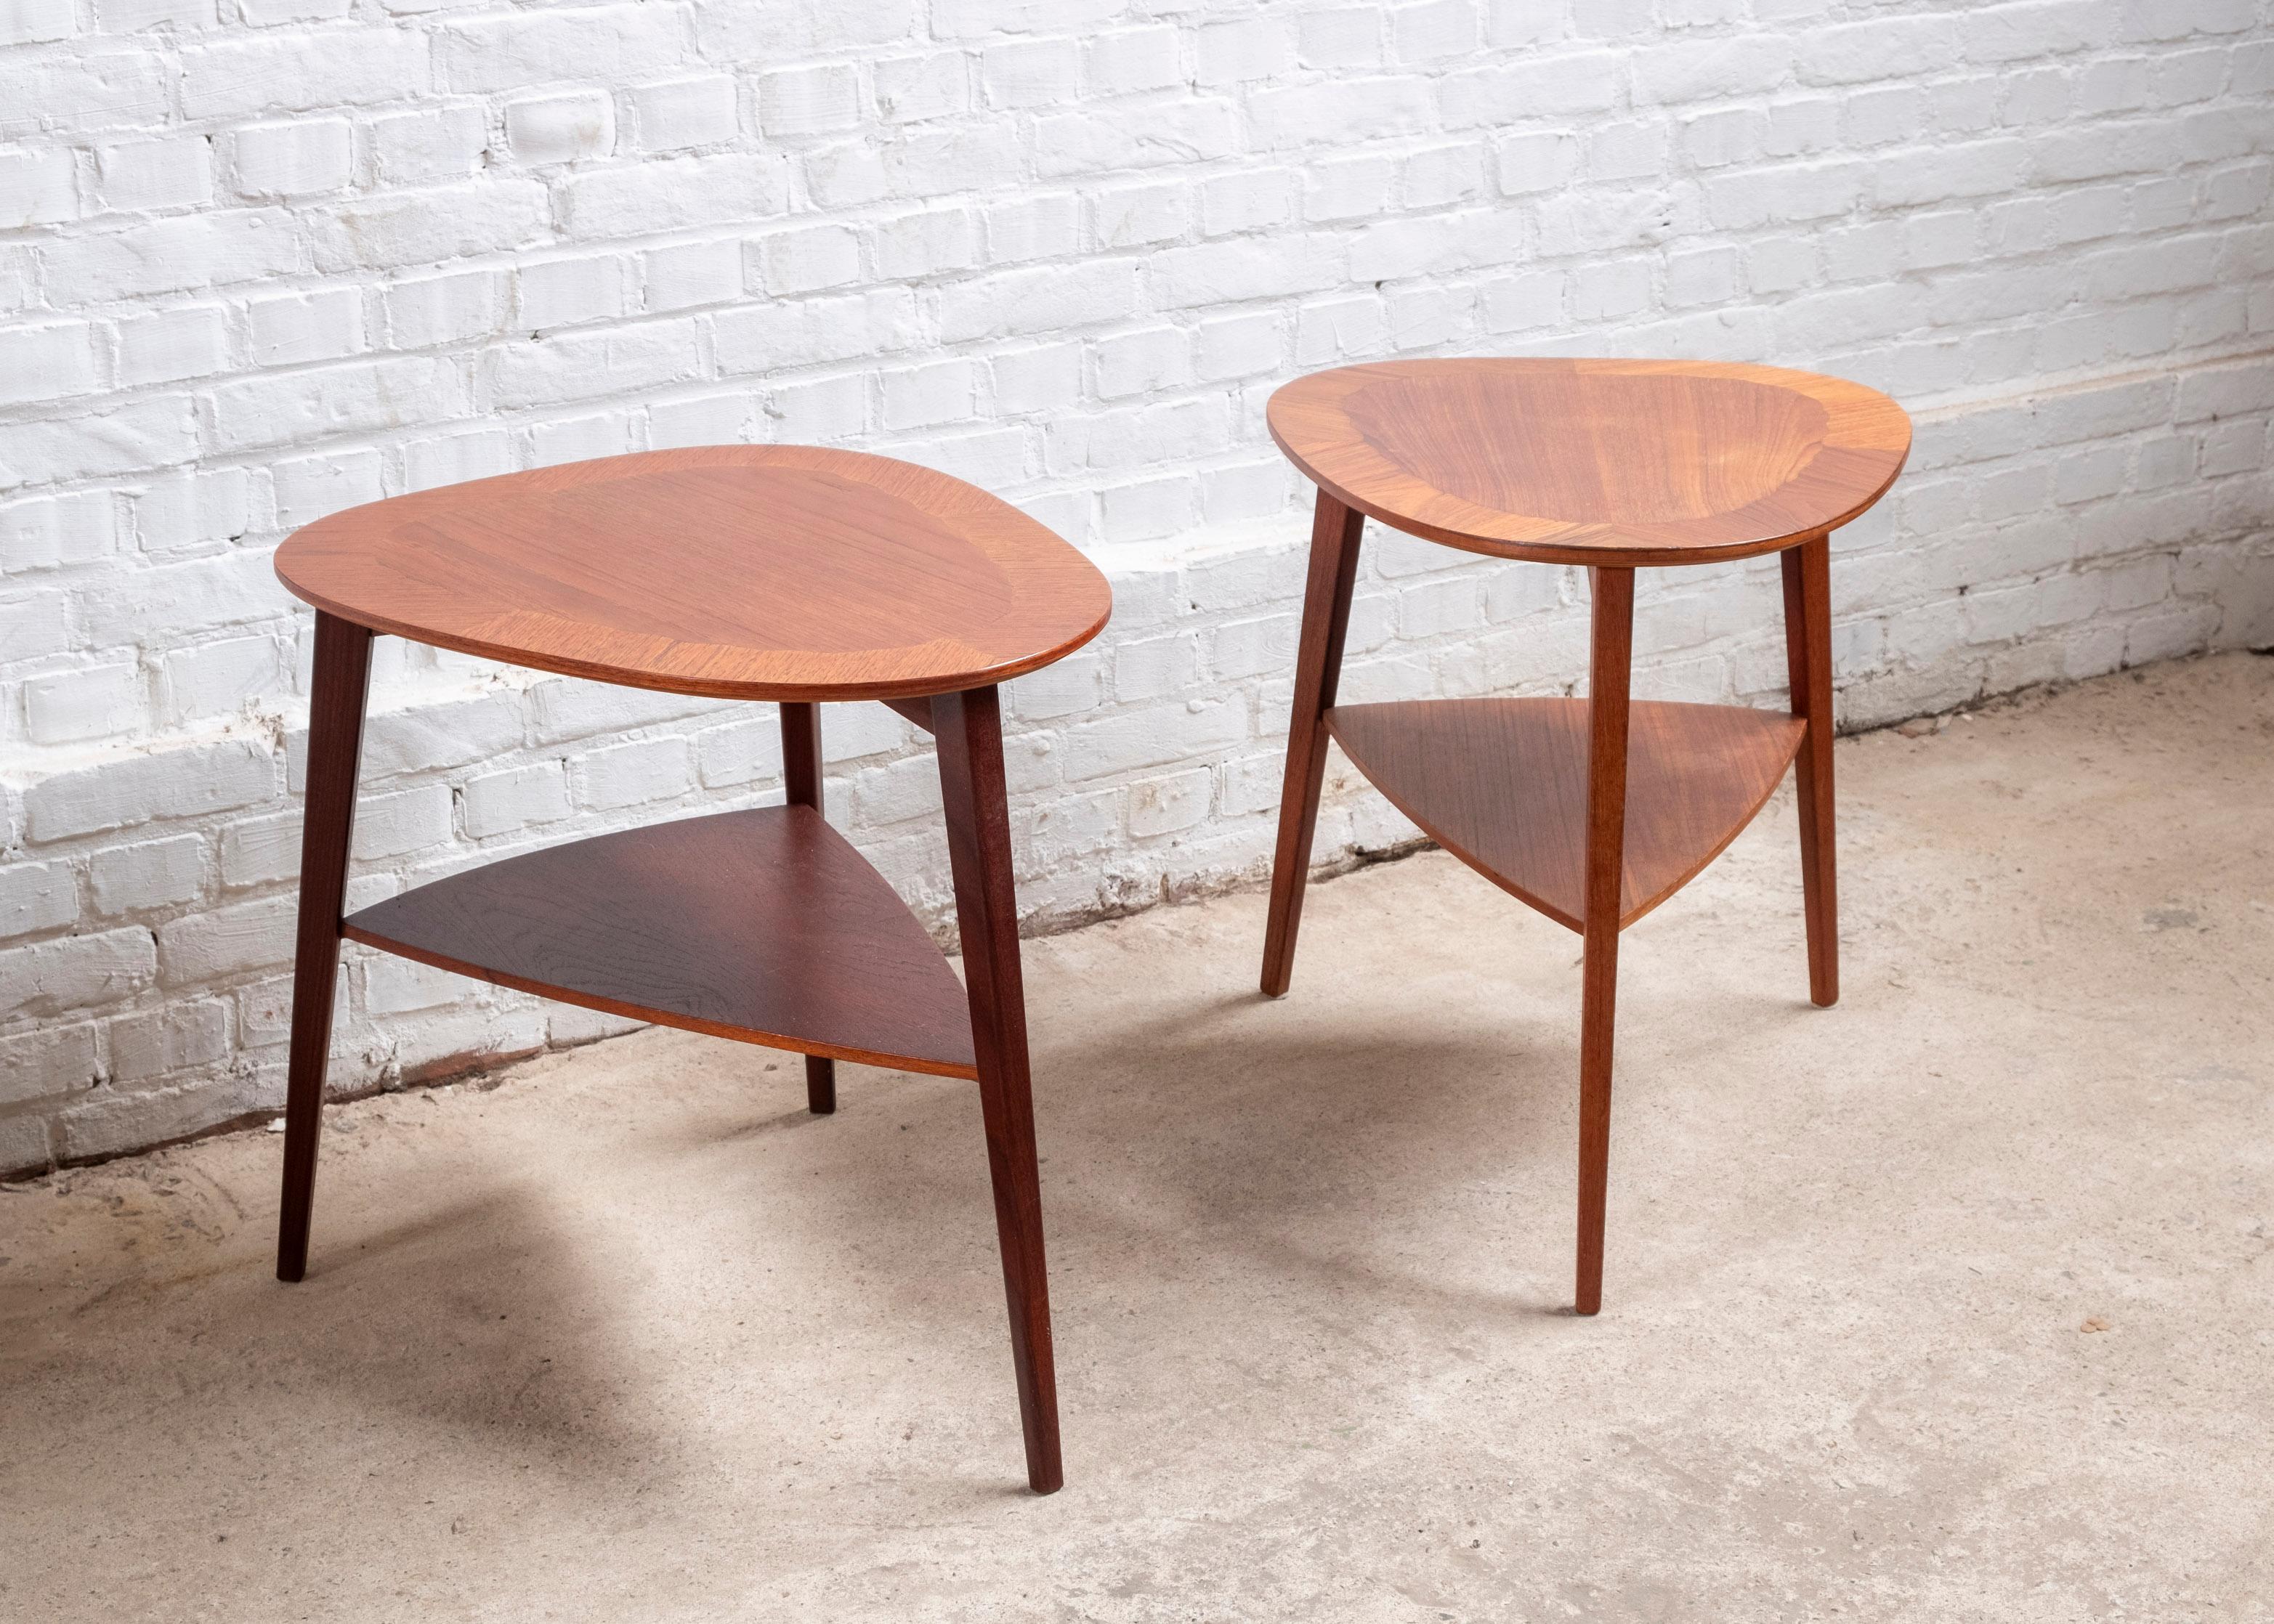 Paire de tables d'appoint modernes danoises en teck, réalisées par Georg Jensen pour Kubus au Danemark. Produit dans les années 1960
La table est magnifiquement travaillée, le plateau présente une bordure en quart de cercle en marqueterie de teck à